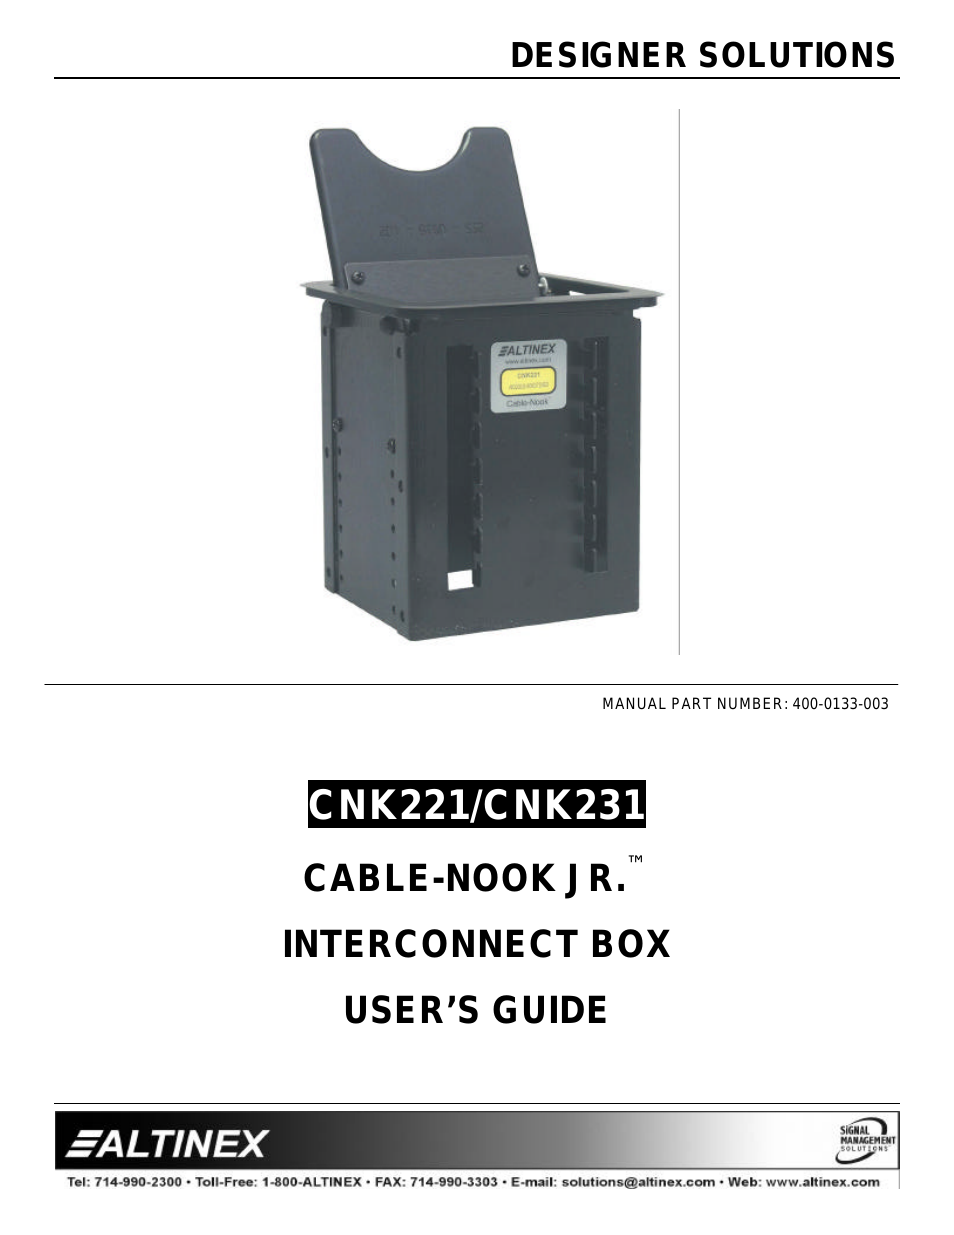 CABLE-NOOK JR CNK221